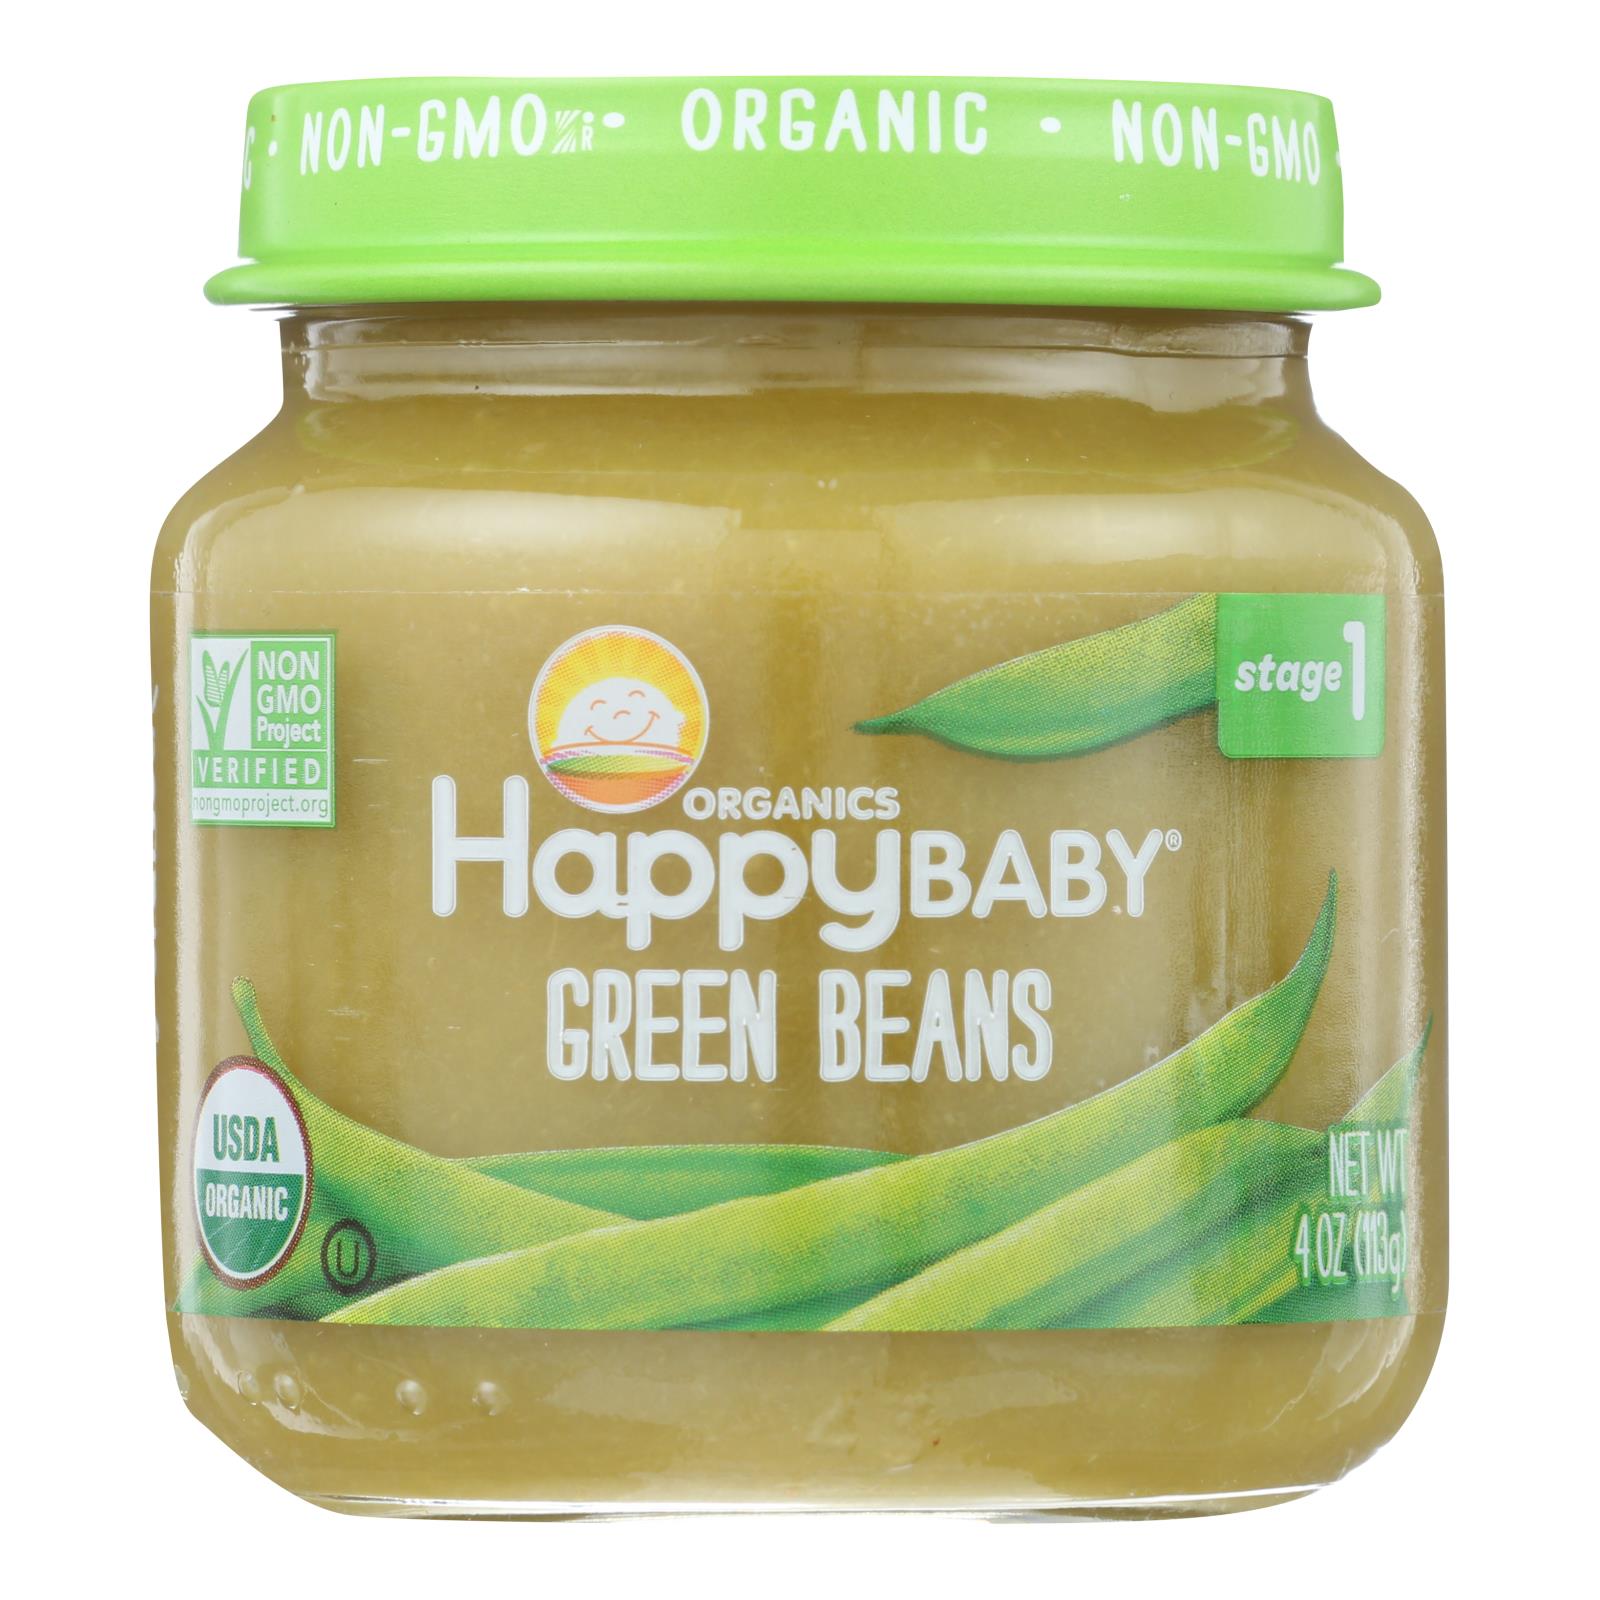 Happy Baby - Cc Green Bns Stg1 Jar - 6개 묶음상품 - 4 OZ